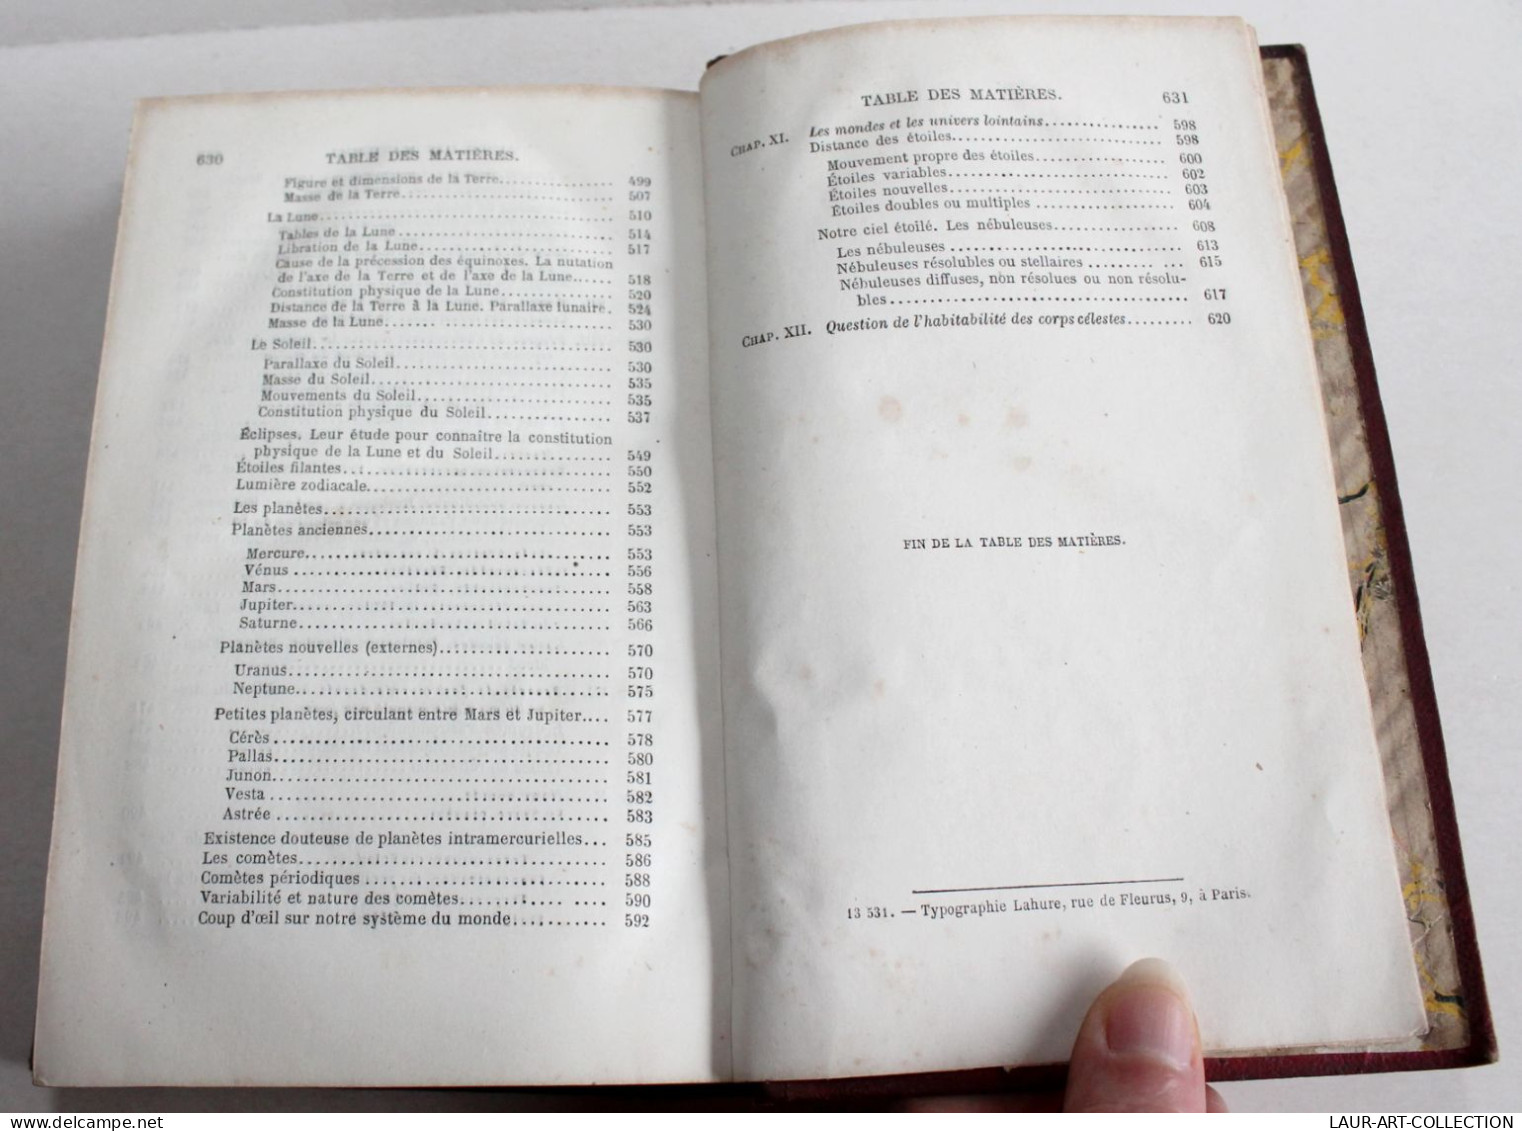 HISTOIRE DE L'ASTRONOMIE DEPUIS SES ORIGINES JUSQU'A NOS JOURS par HOEFER 1873 / ANCIEN LIVRE XIXe SIECLE (2603.49)